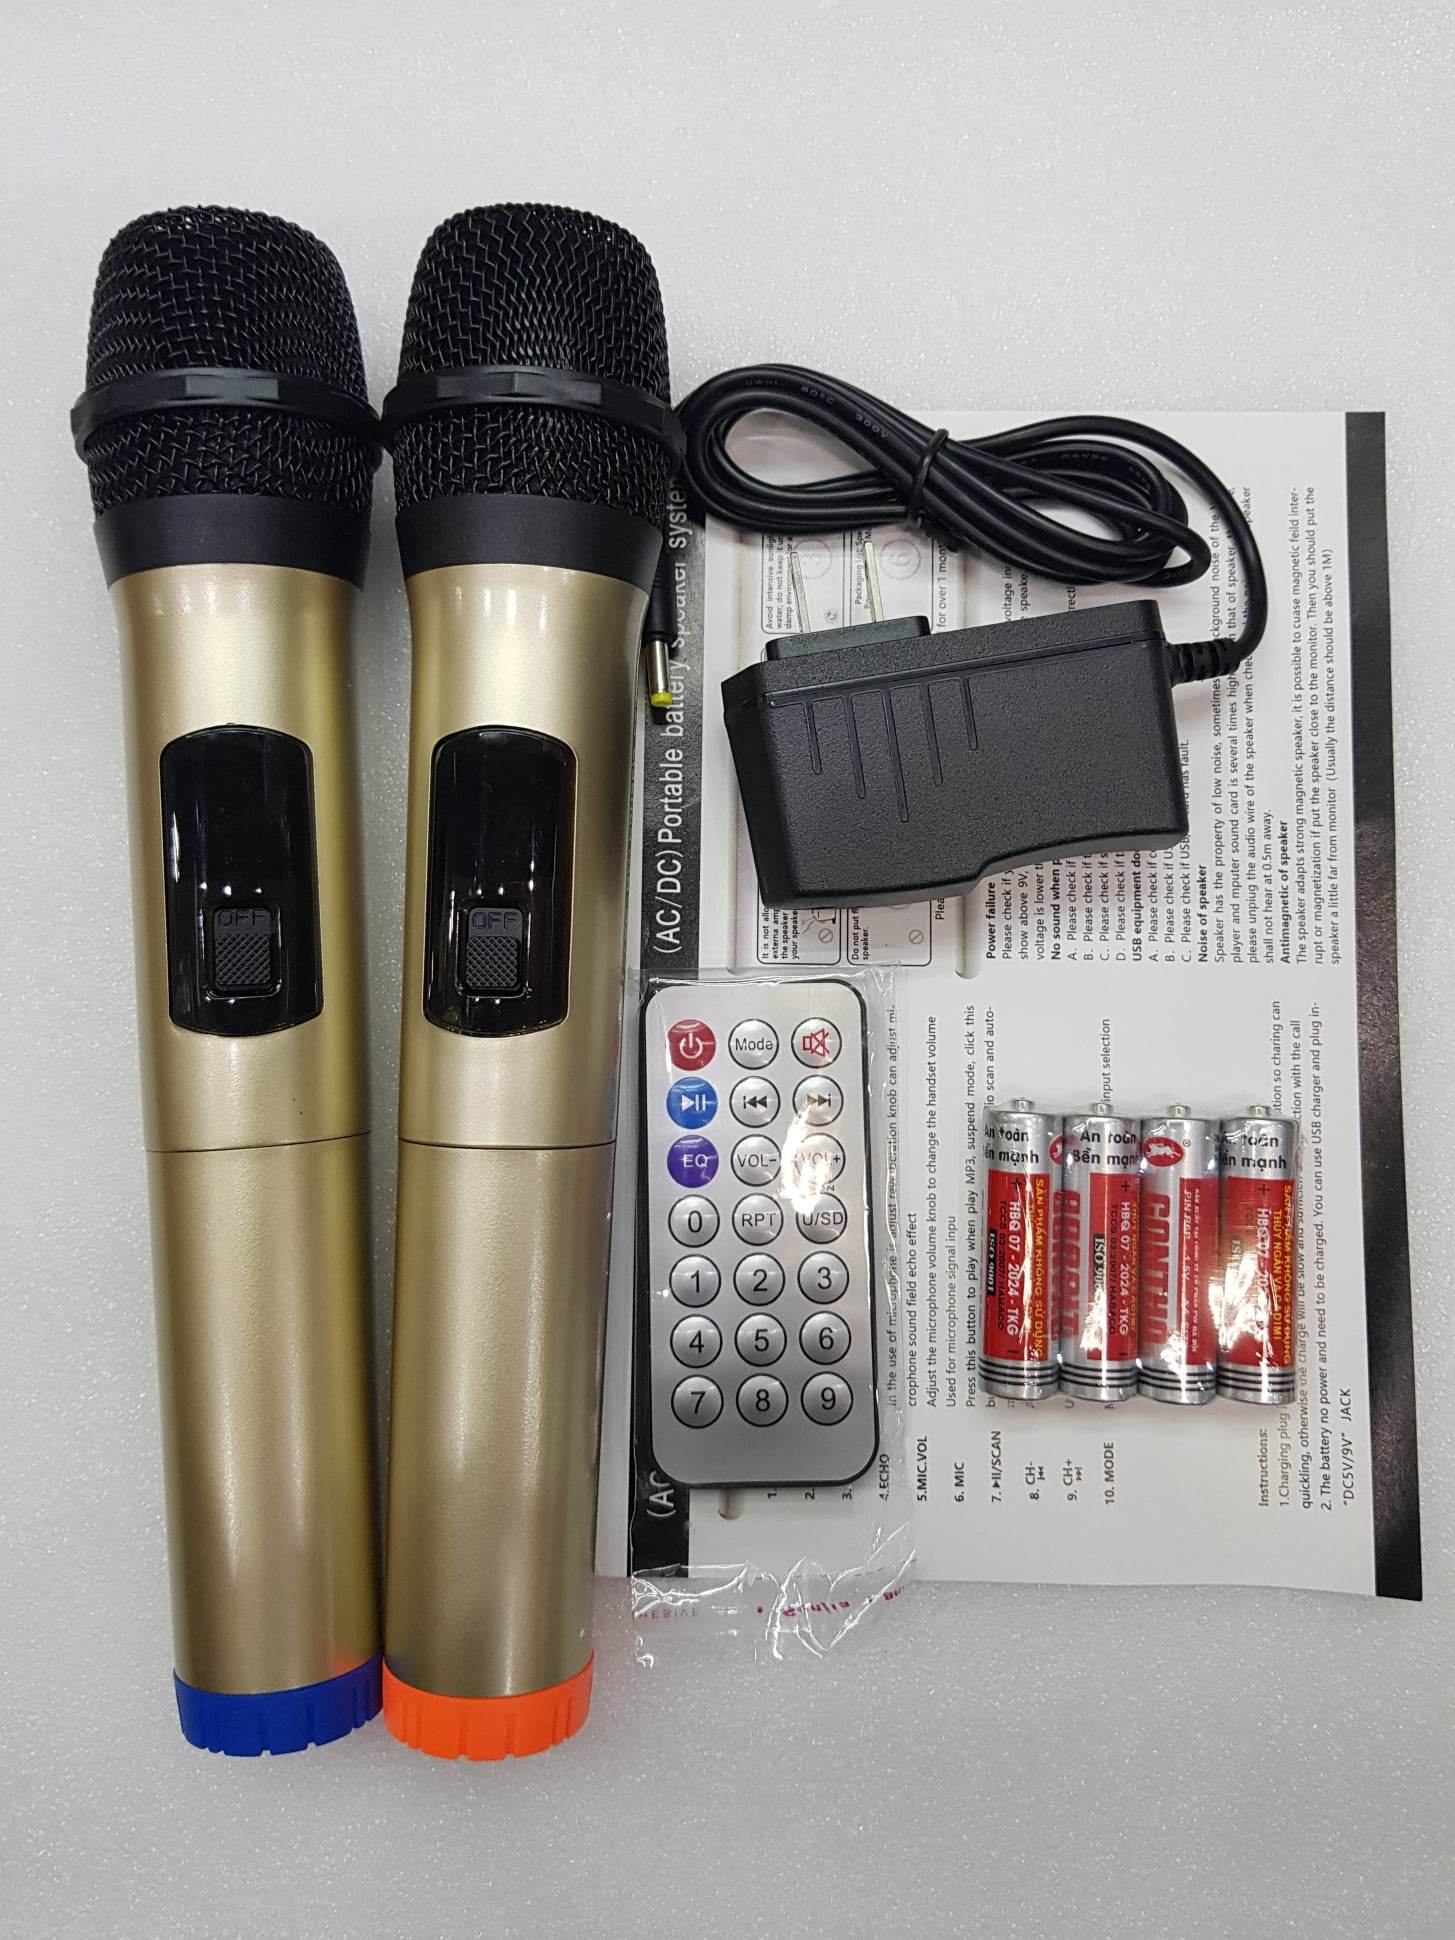 Loa kéo Karaoke Bluetooth TOMASUN XY2208: Bass 20, Tiếng hay, Có 2 Micro không dây đi kèm